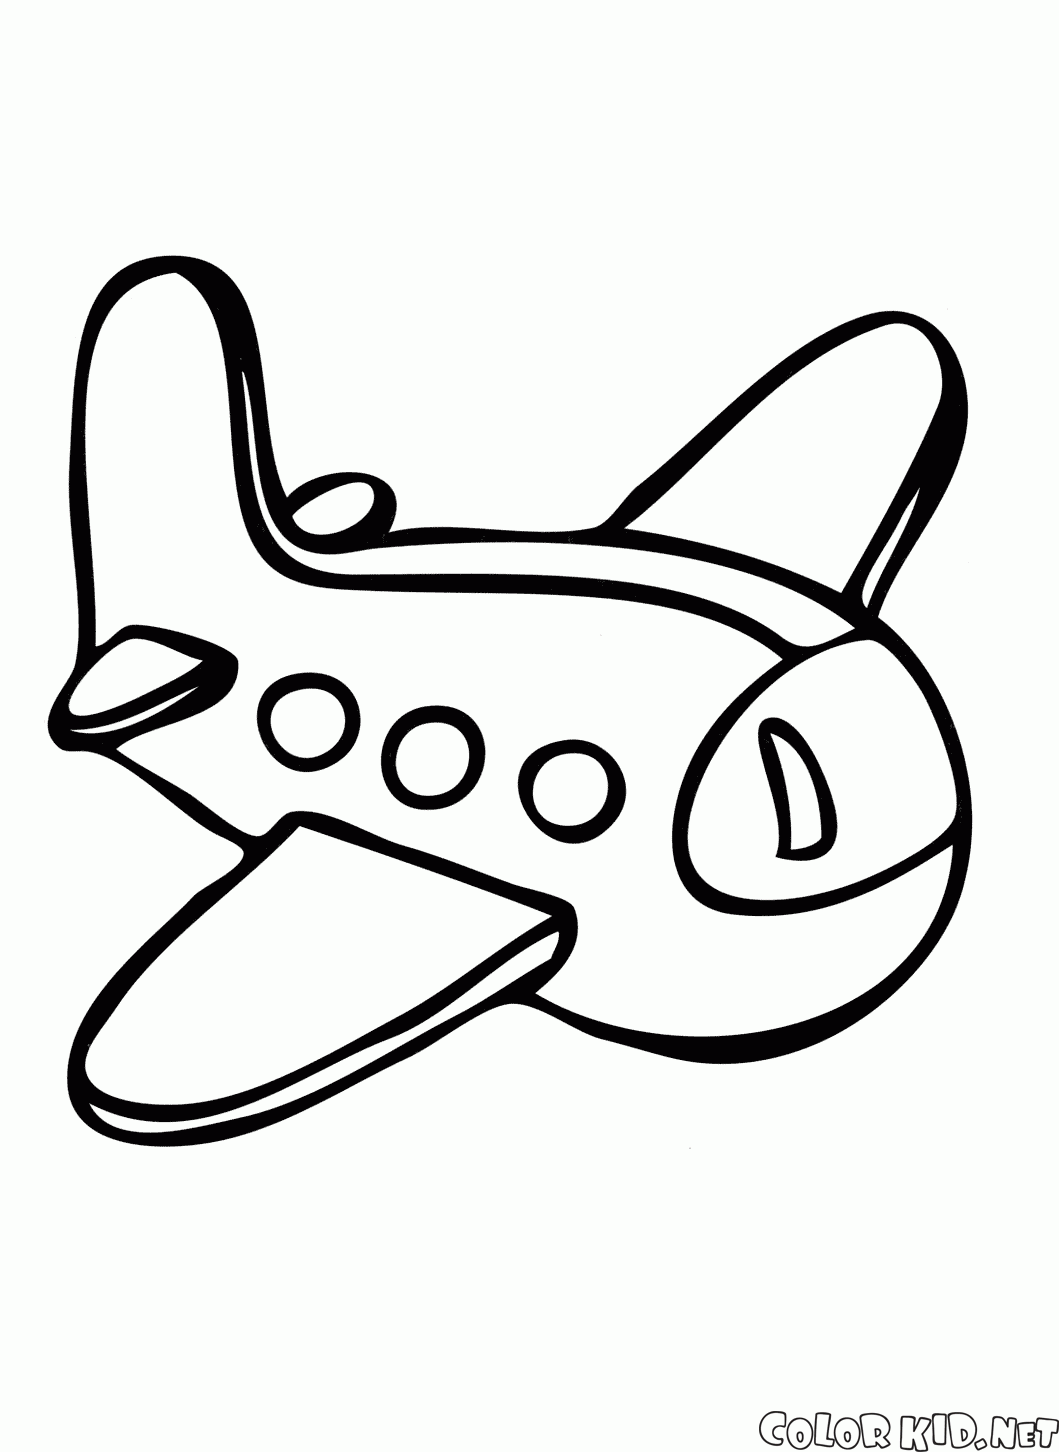 Avion de juguete